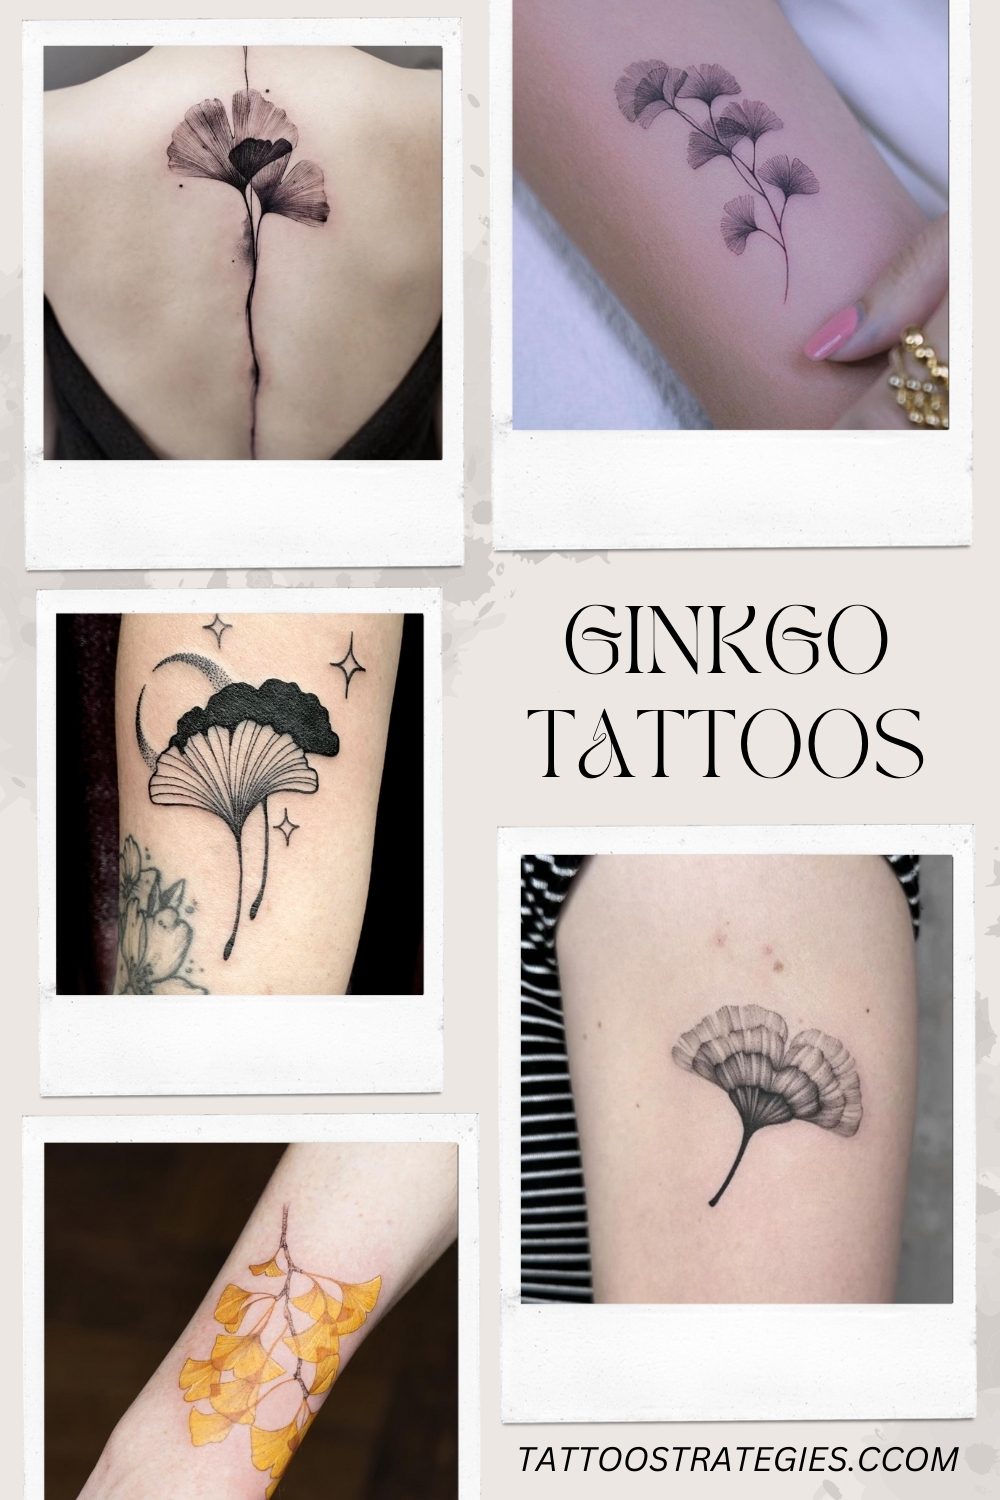 Ginkgo TattooS - Tattoo Strategies